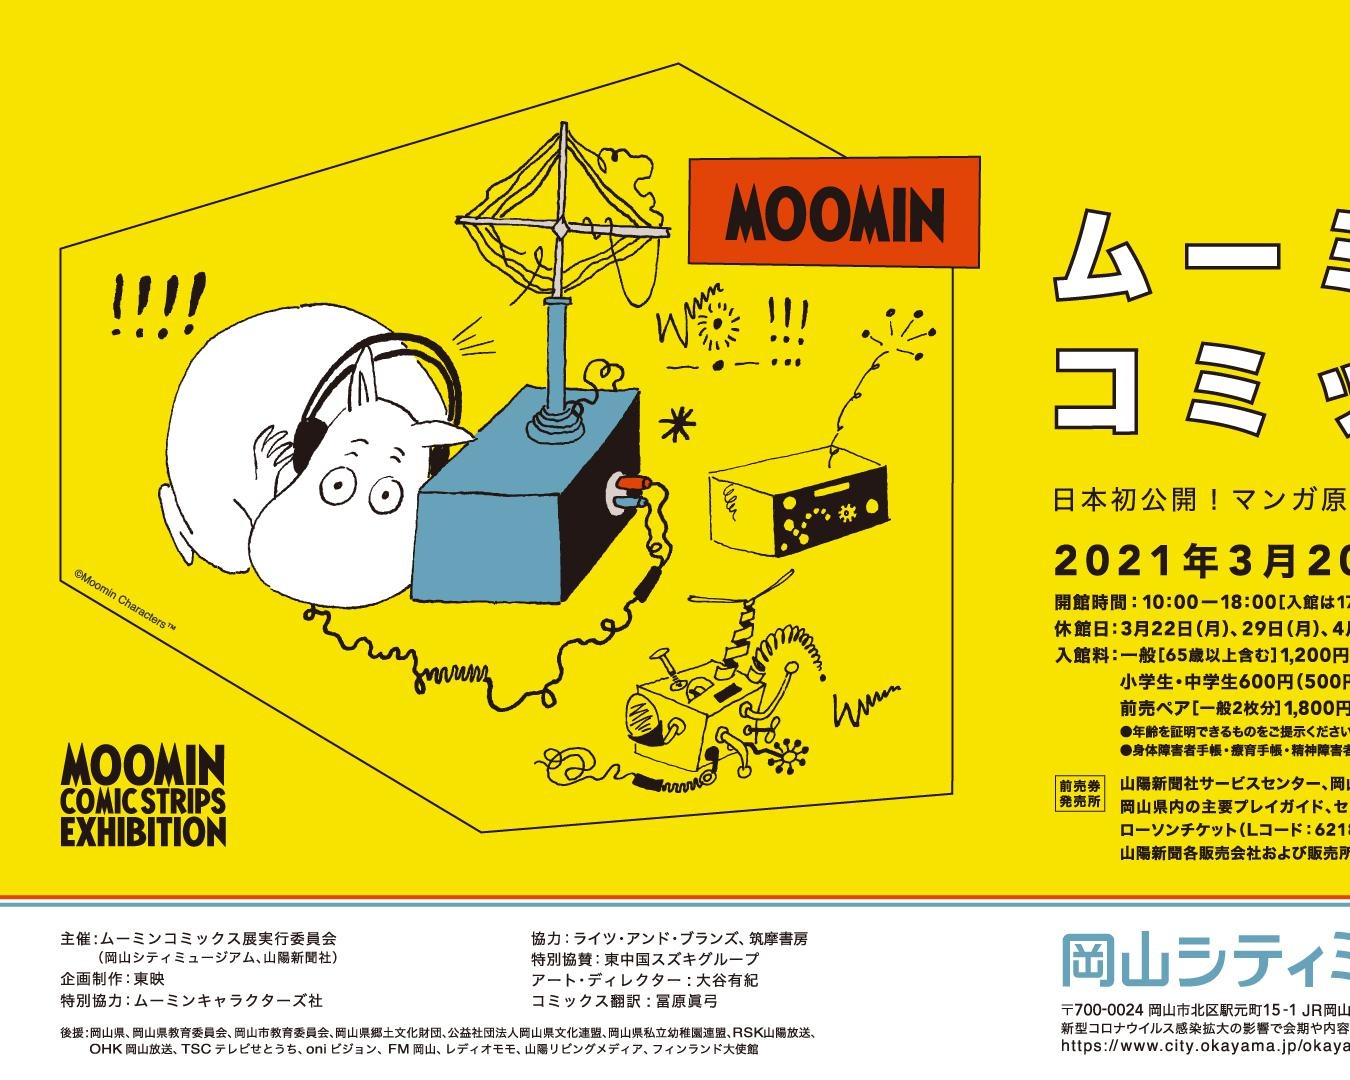 日本初公開の原画など約280点を展示、岡山県岡山市の岡山シティミュージアムで「ムーミン コミックス展」開催